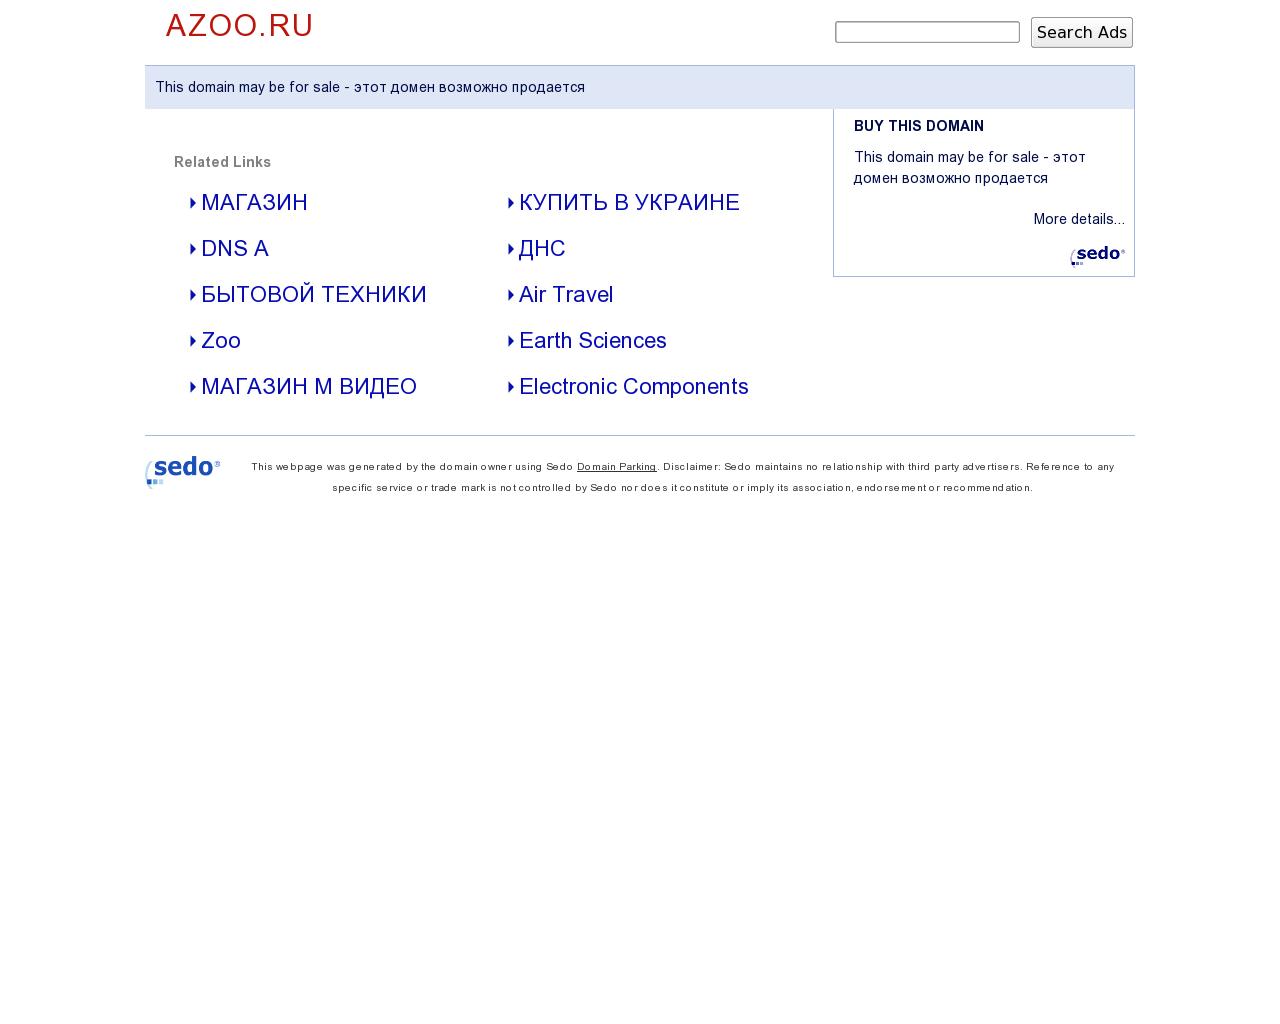 Изображение сайта azoo.ru в разрешении 1280x1024